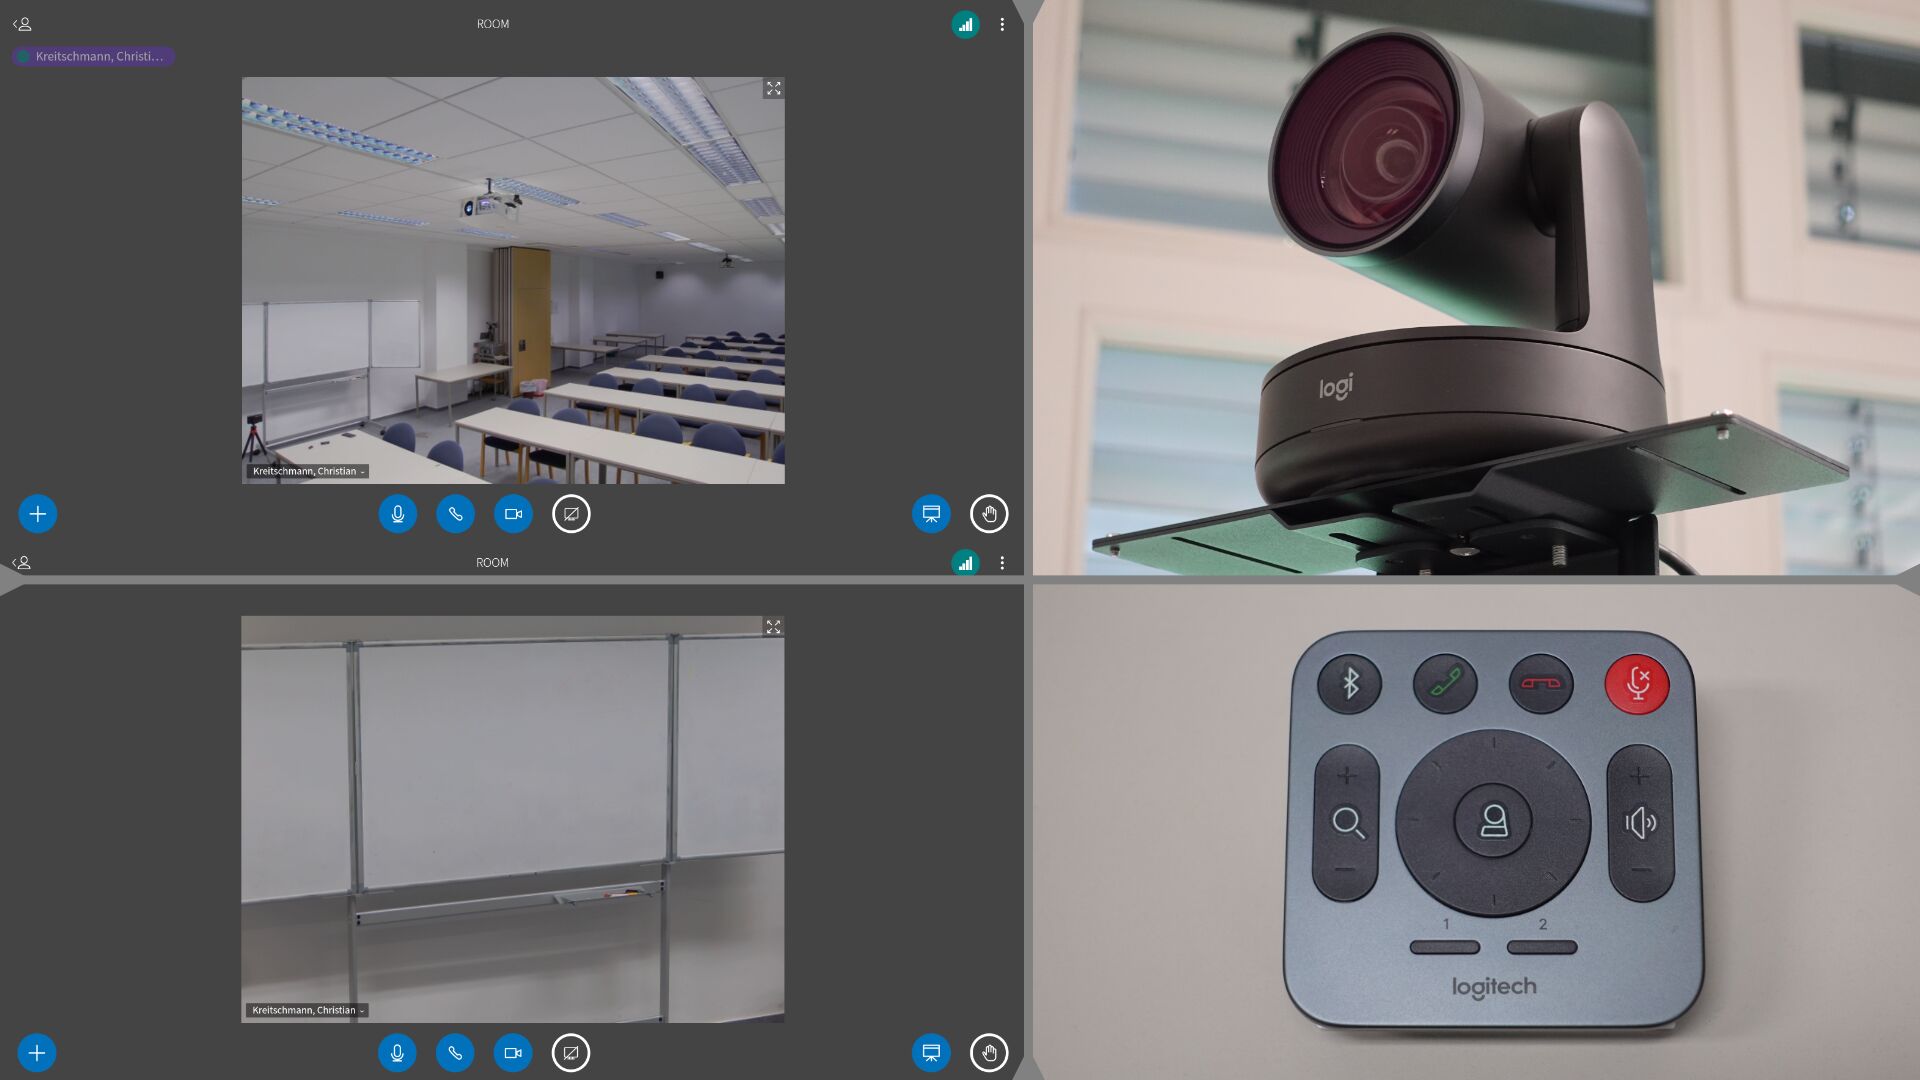 Bildstrecke mit vier Bilder: Webcam-Videobild eines Seminarraumes, Webcam-Videobild einer herangezoomten Tafel, Foto der Webcam des Konferenzystems, Foto der Webcam-Fernbedienung